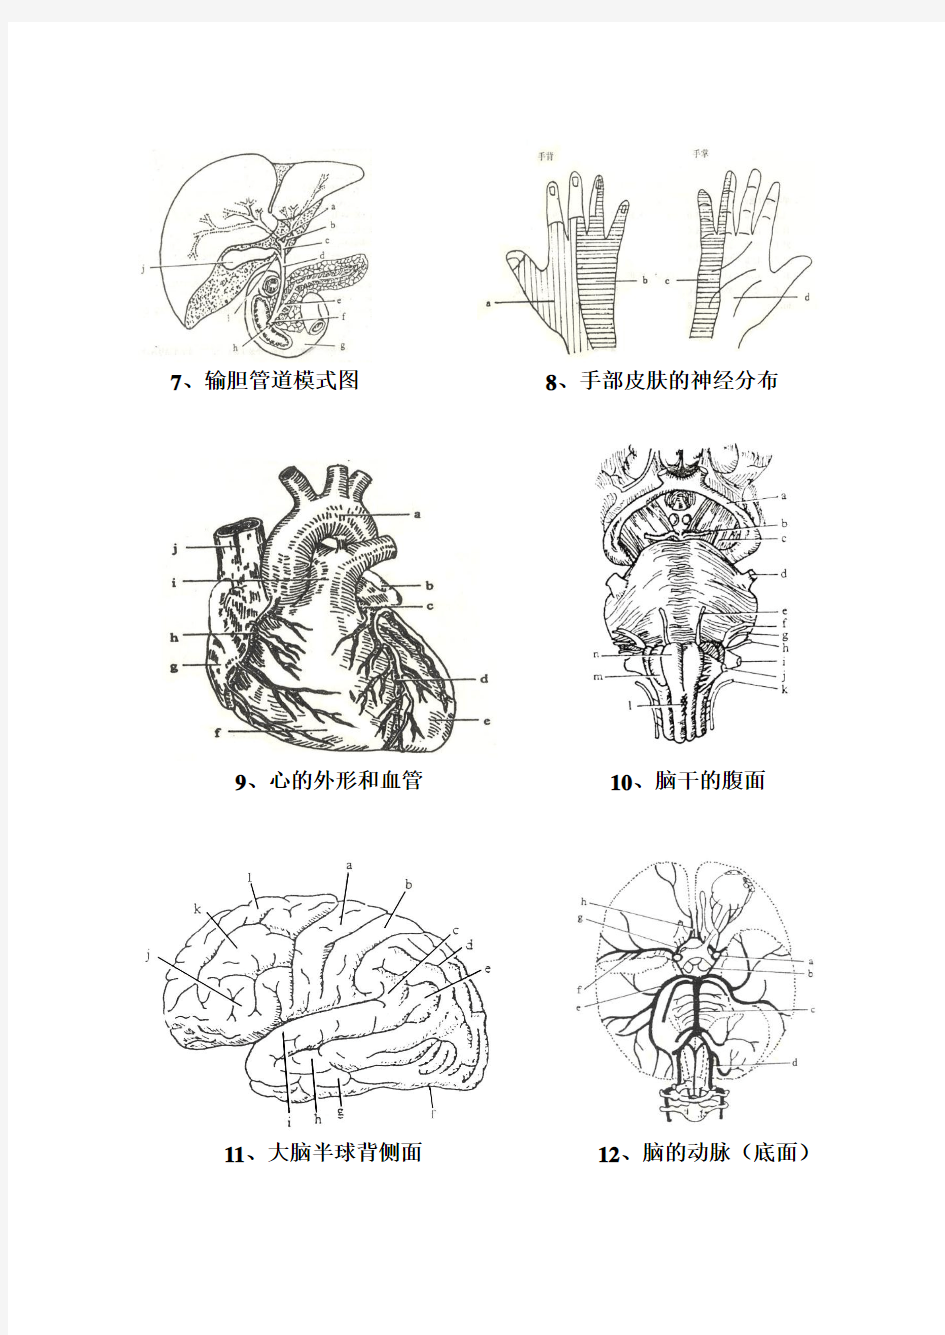 2013-人体解剖学-填图作业(12幅图)-非临床(72学时)